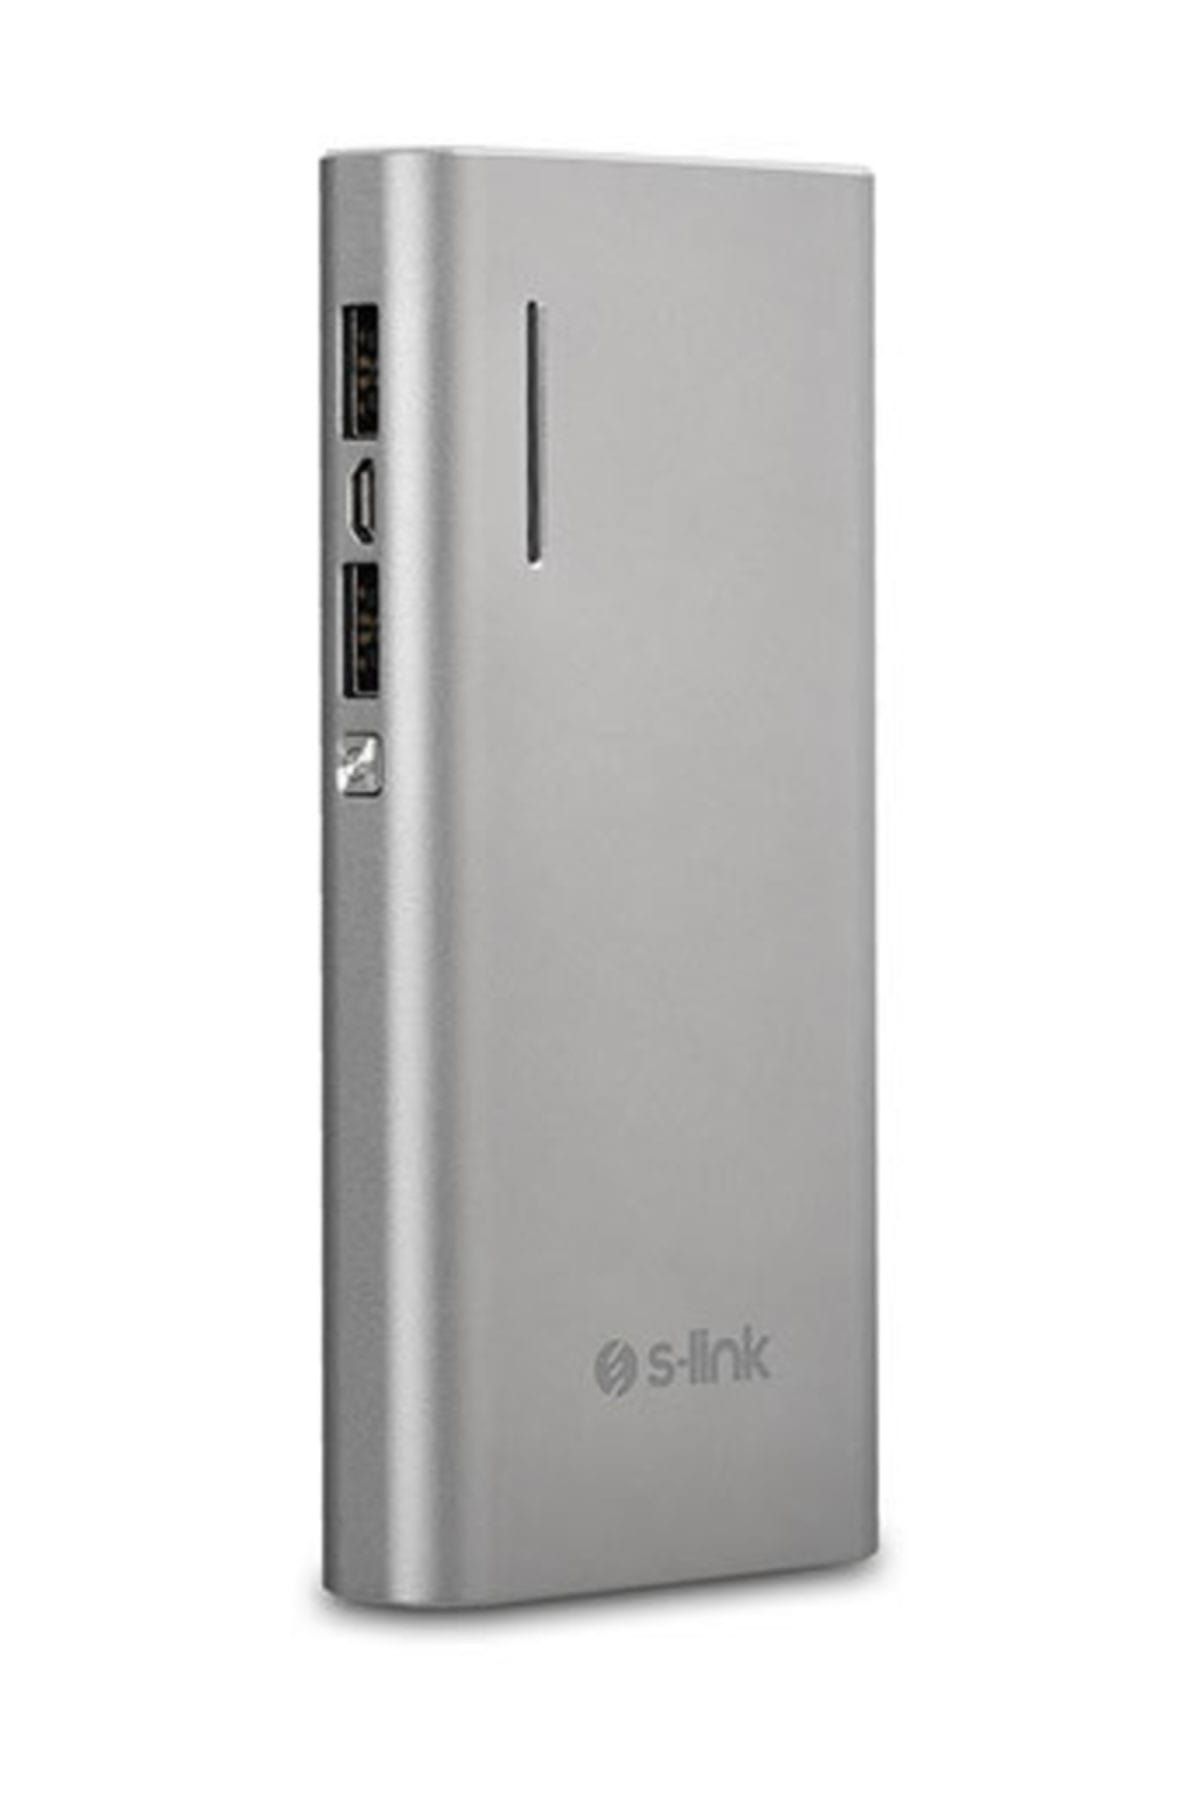 S-Link 2 Usb'li 13000mAh Gümüş Taşınabilir Pil Şarj Cihazı  ( Hızlı Şarj )